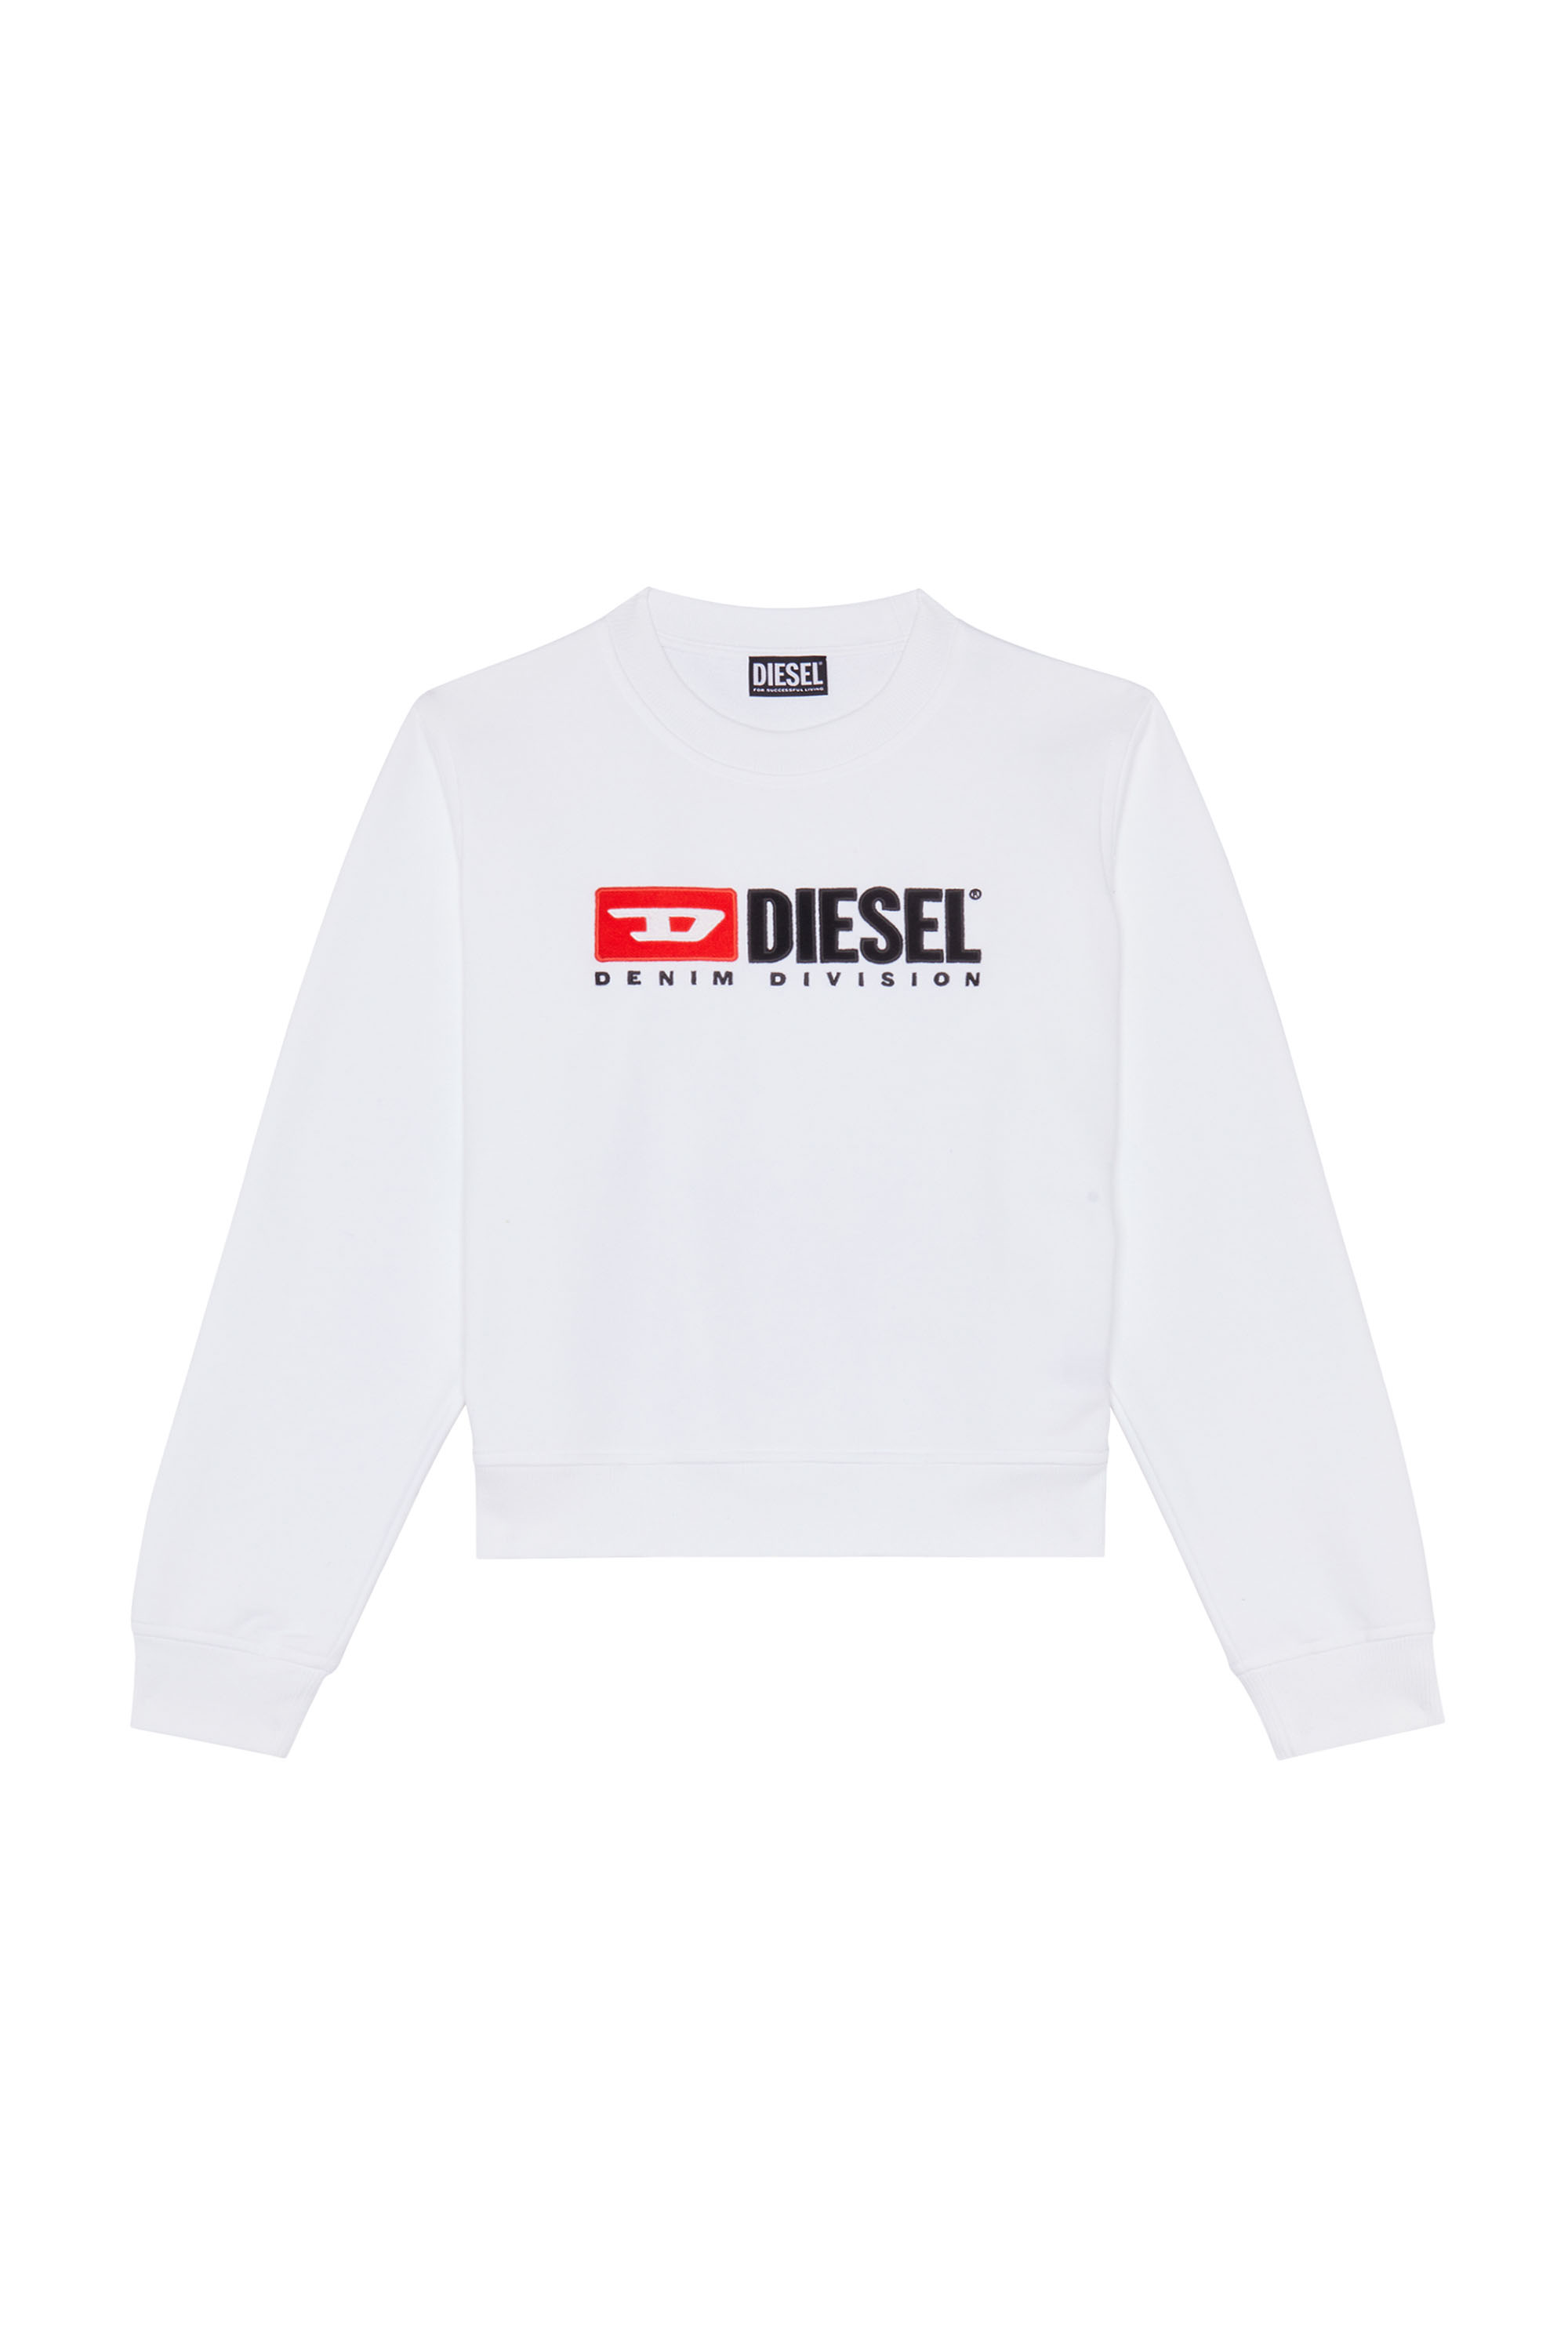 Diesel - F-REGGY-DIV, White - Image 3